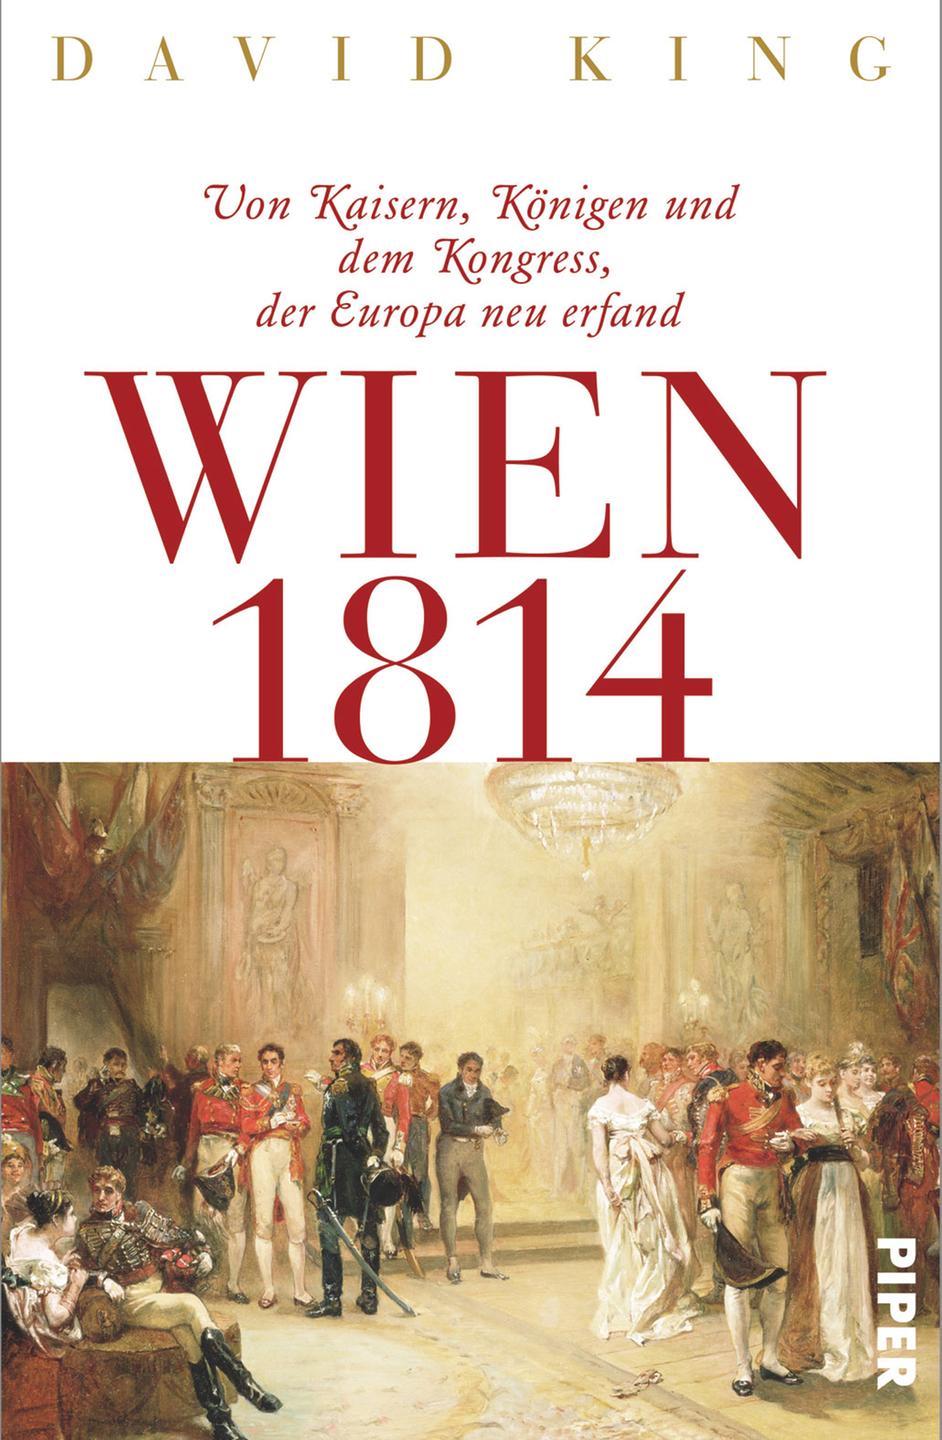 Buchcover: David King - "Wien 1814. Von Kaisern, Königen und dem Kongress, der Europa neu erfand"